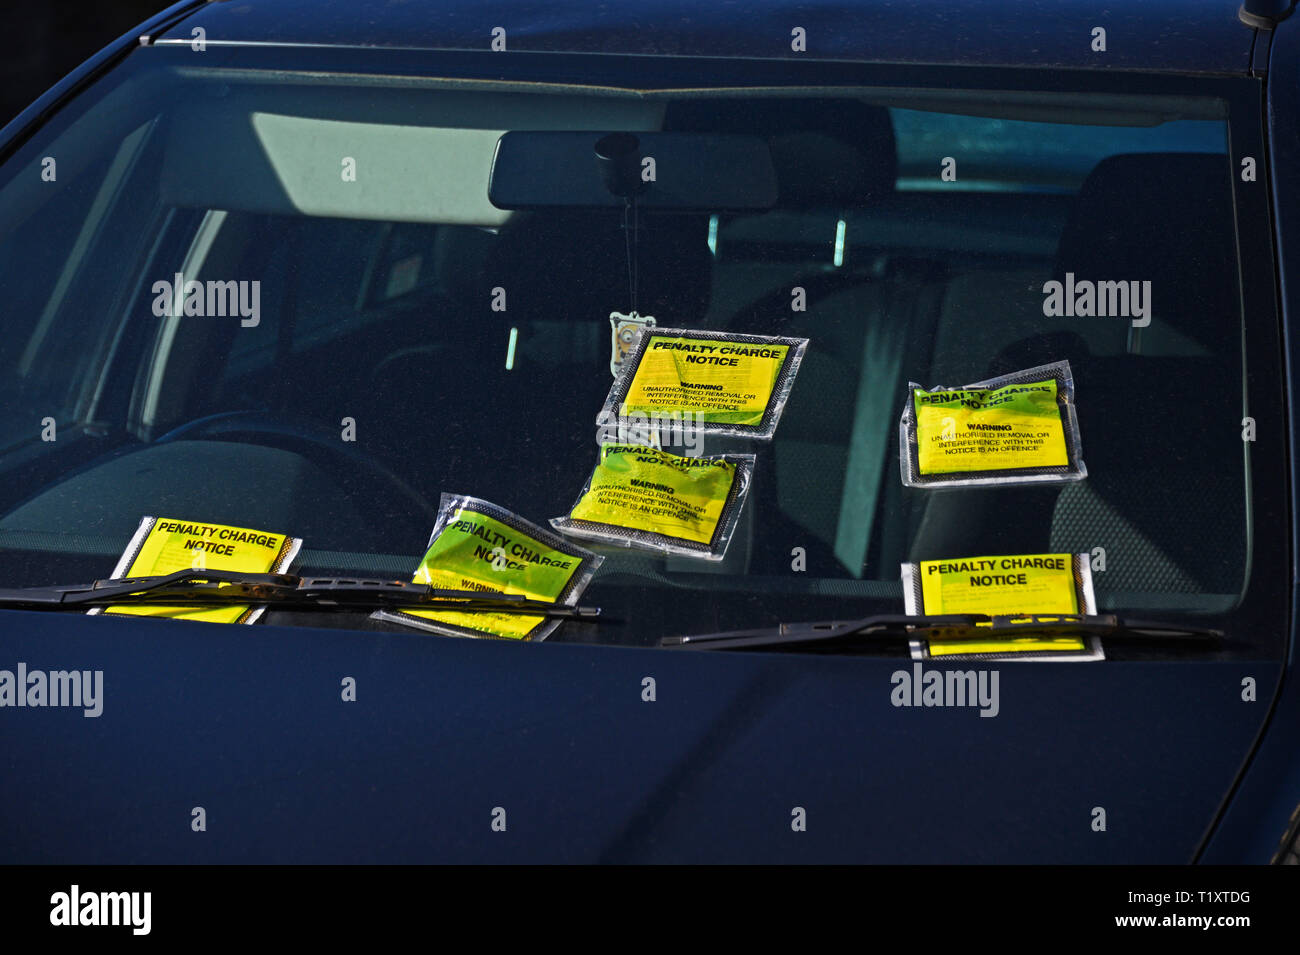 Pare-brise de voiture en stationnement illégal sur double-lignes jaunes avec six avis de pénalité. Parkside Road, Kendal, Cumbria, Angleterre, Royaume-Uni, Union européenne Banque D'Images